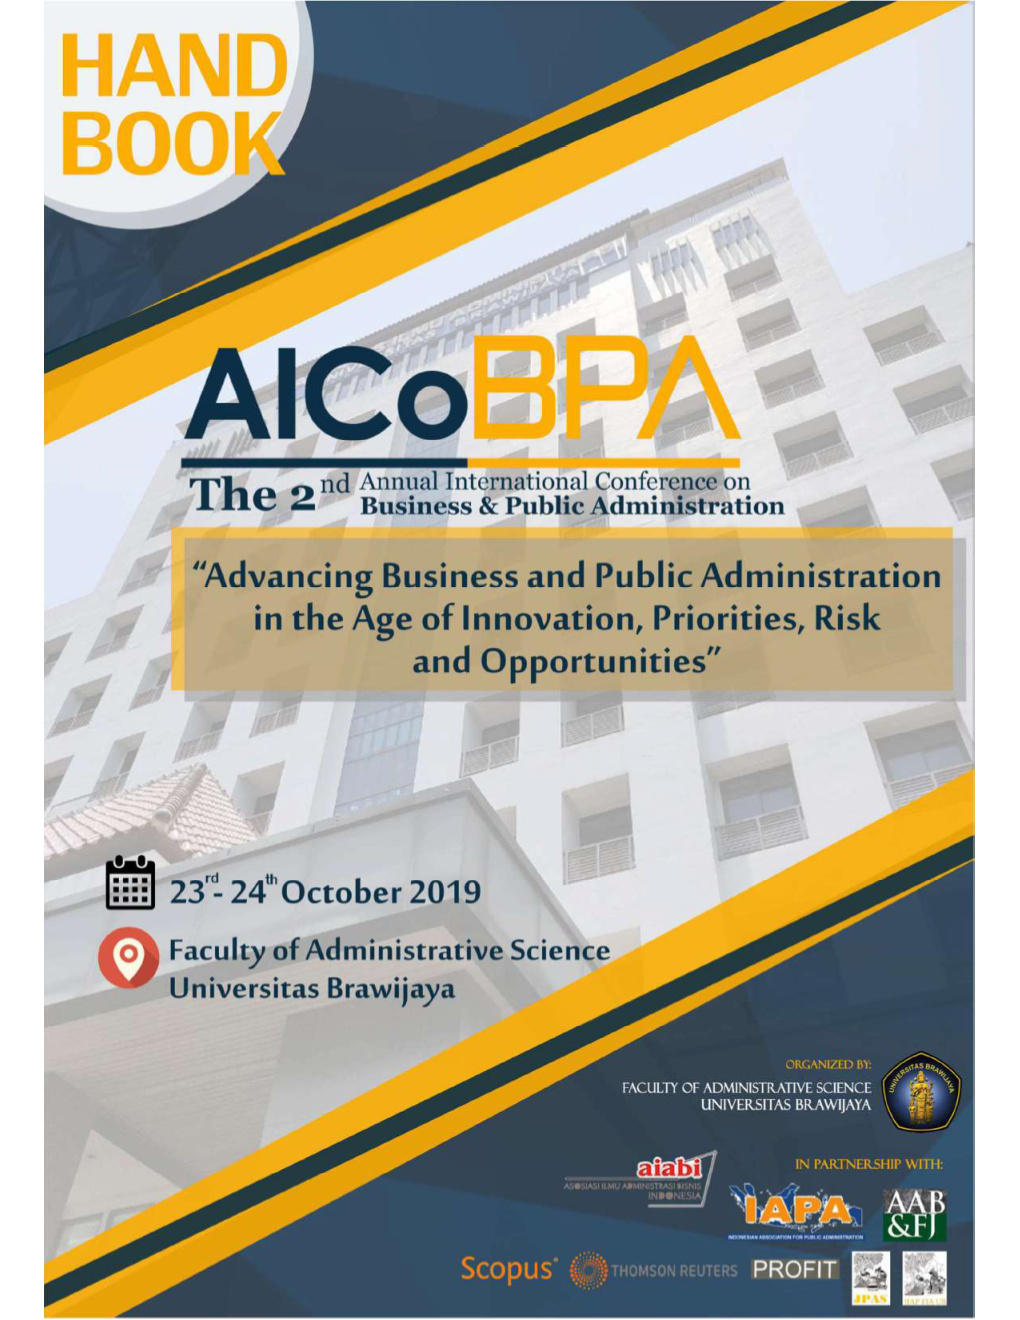 Booklet Aicobpa 2019